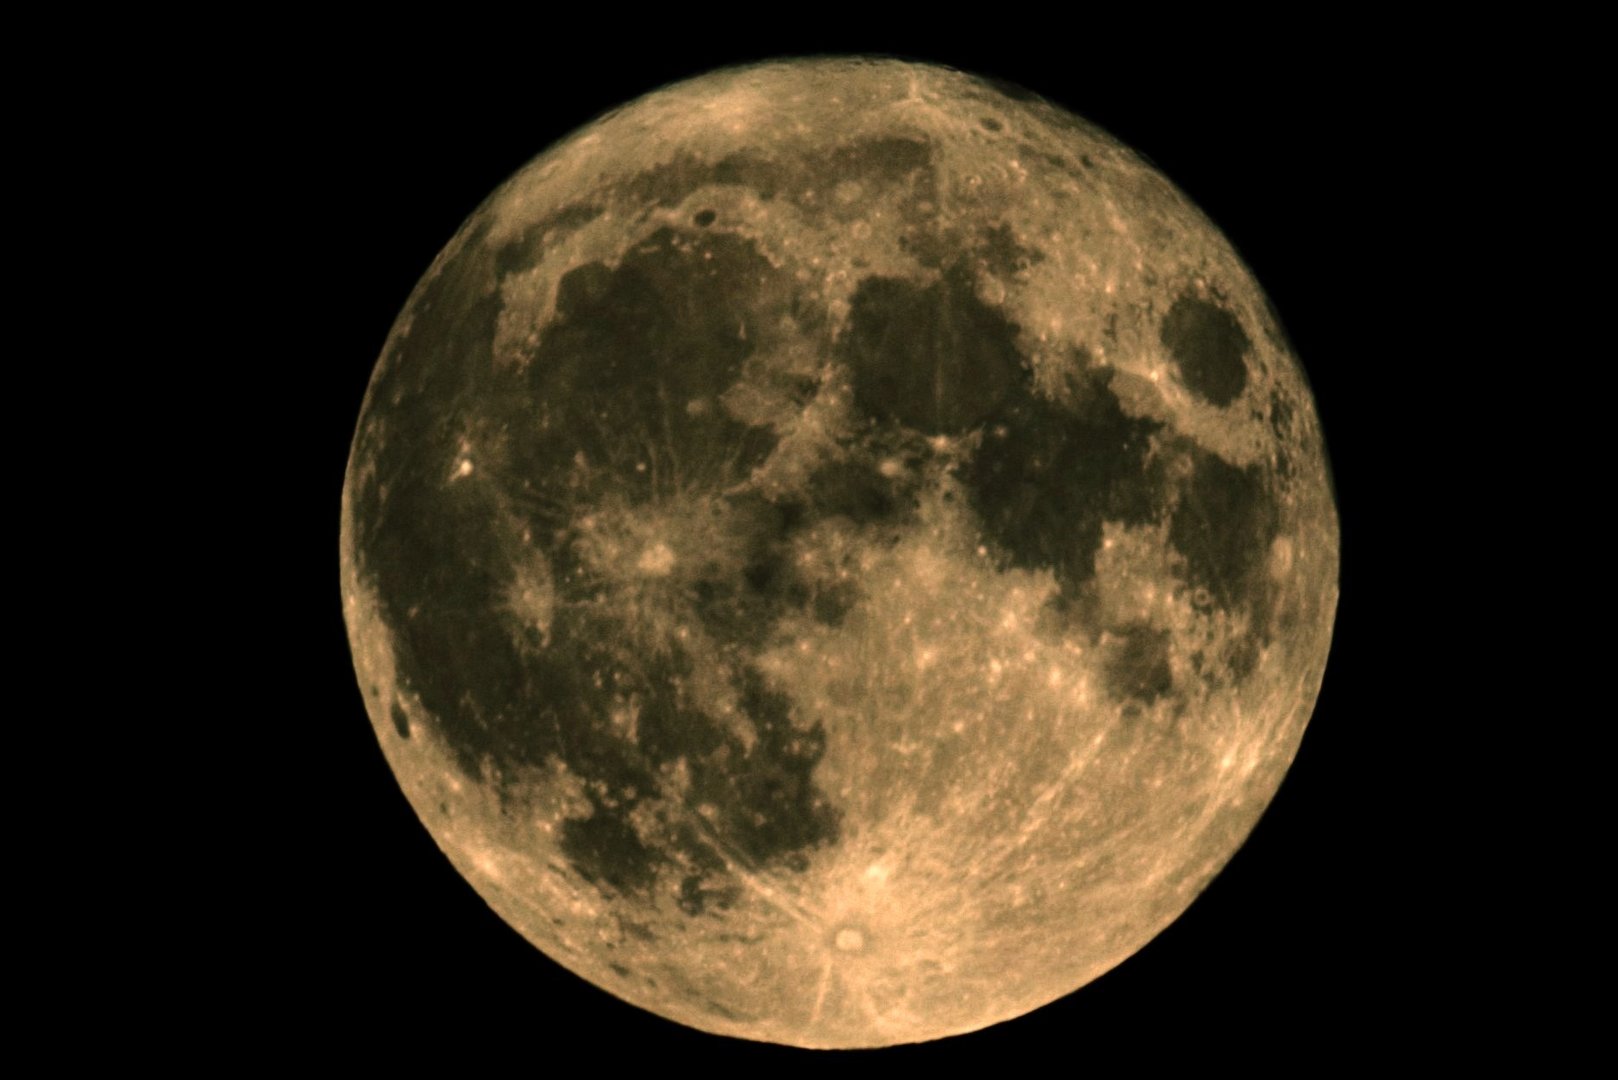 Pleine Lune